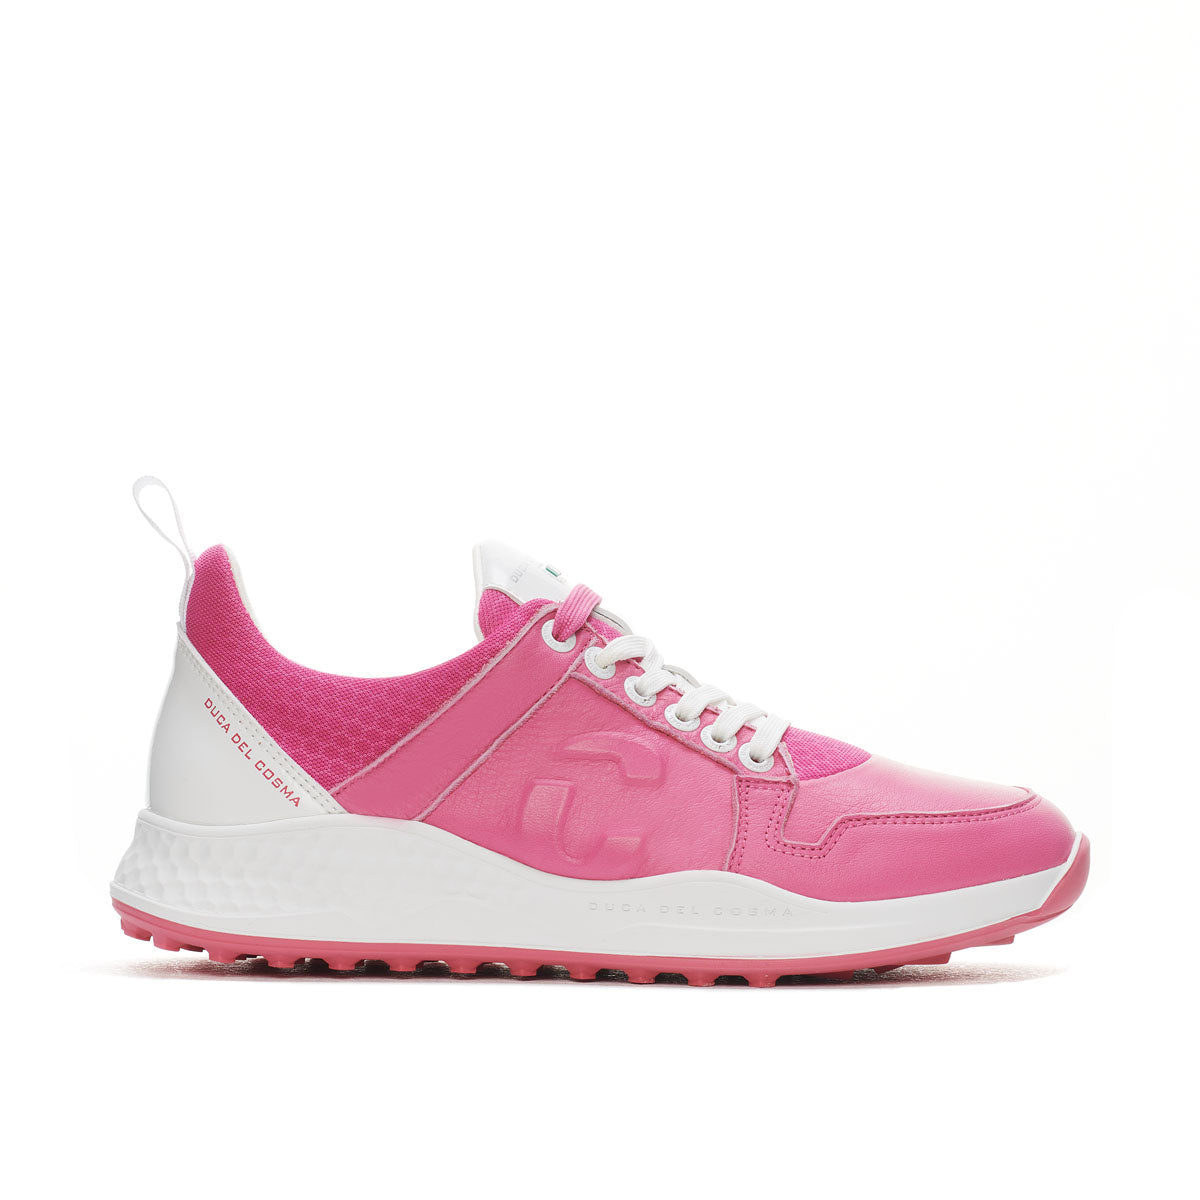 Siren Pink - Womens golf shoes